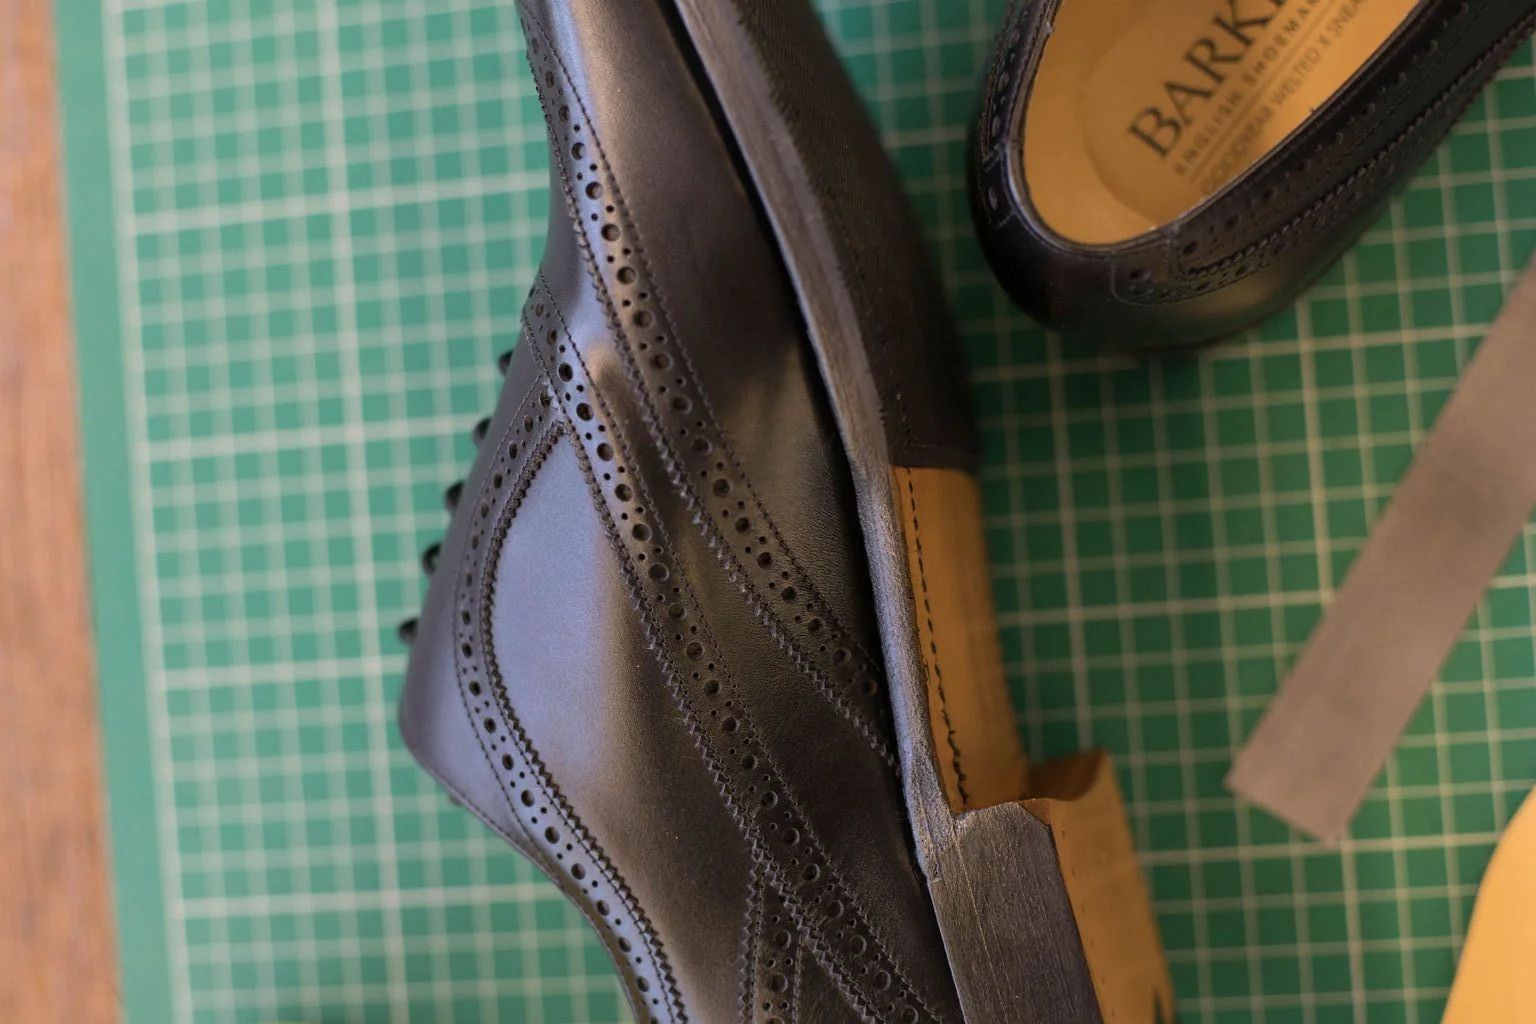 Turing Derbie  - Barker Shoes